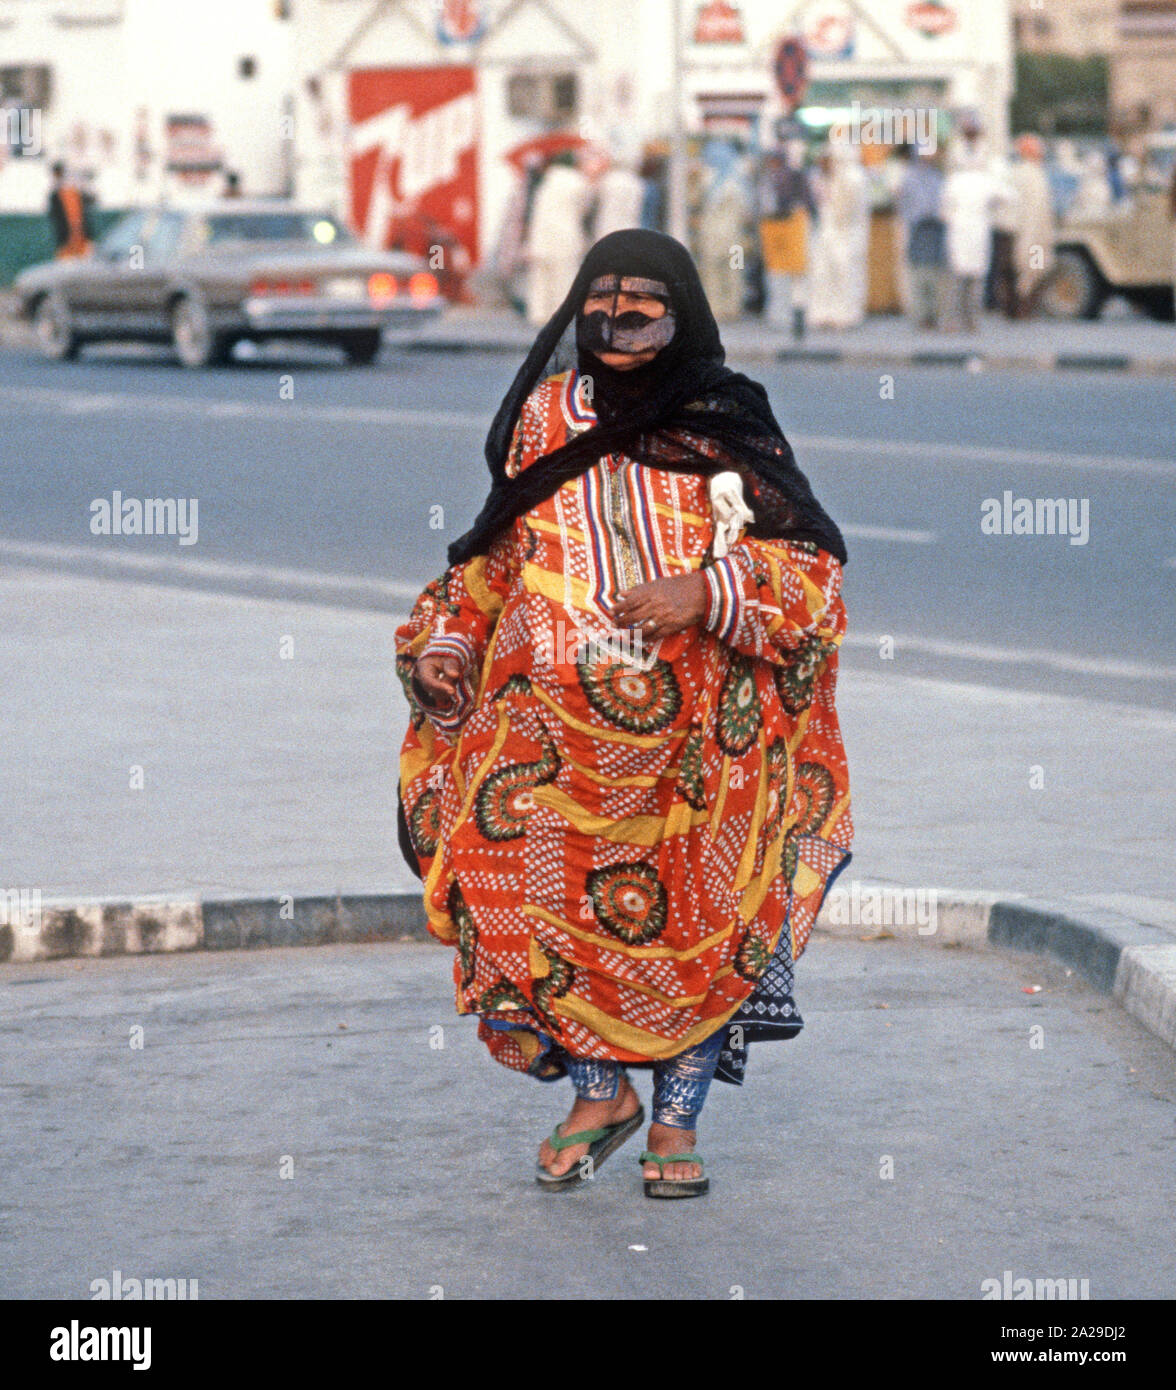 Dubai Frau im traditionellen Gewand und hijab Kopftuch, Vereinigte  Arabische Emirate, VAE Stockfotografie - Alamy